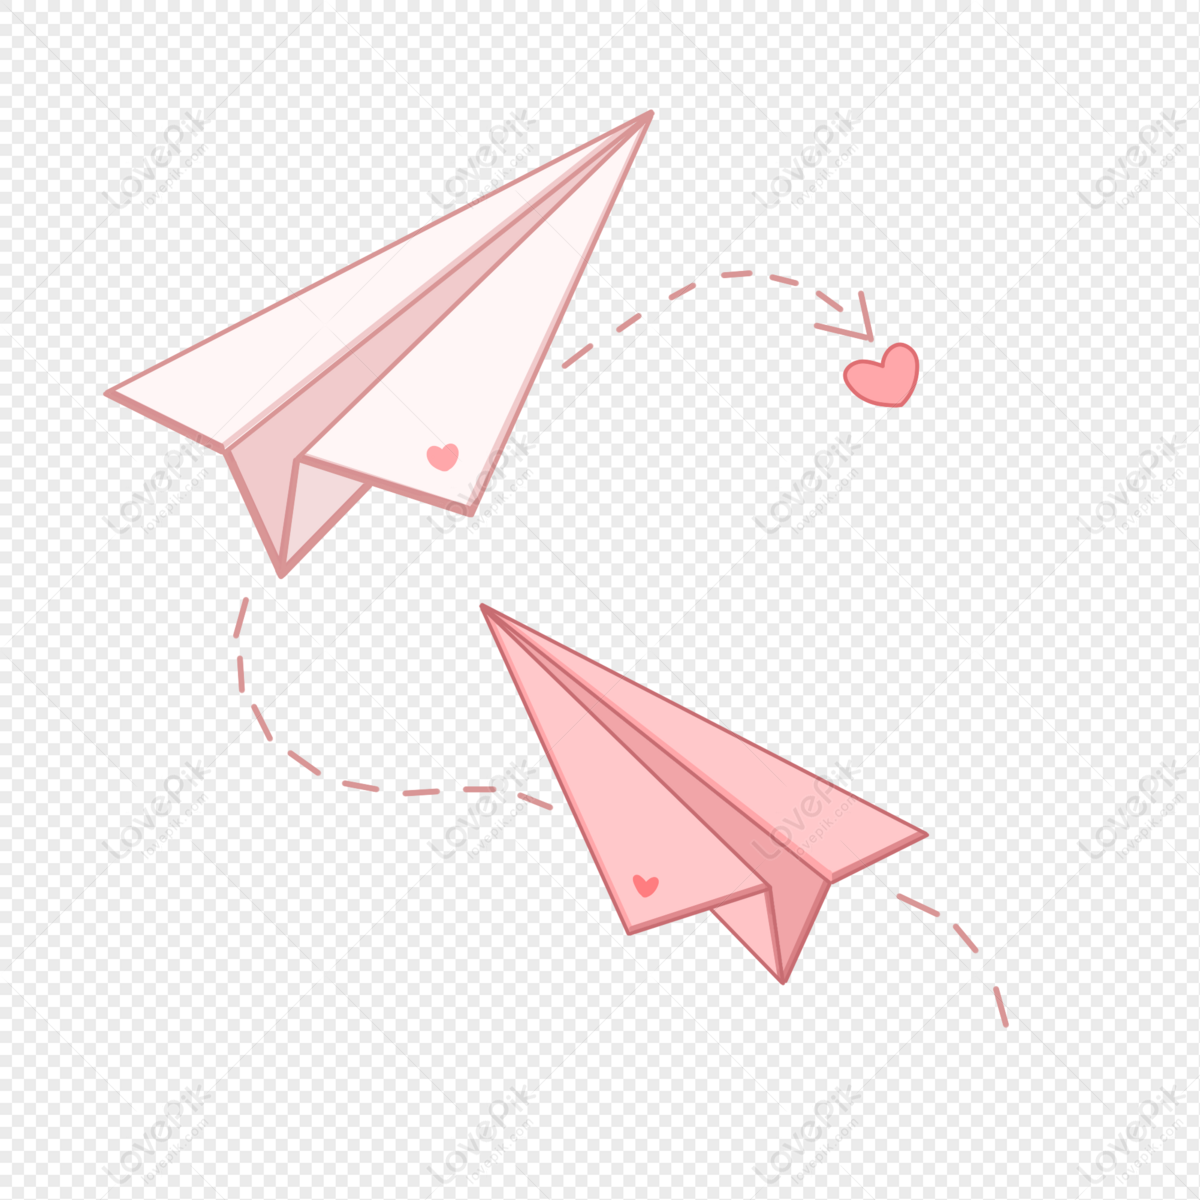 Самолет бумажный я думал королева теперь. Бумажный самолетик. Бумажный самолетик без фона. Бумажный самолетик на прозрачном фоне. Розовый бумажный самолетик.